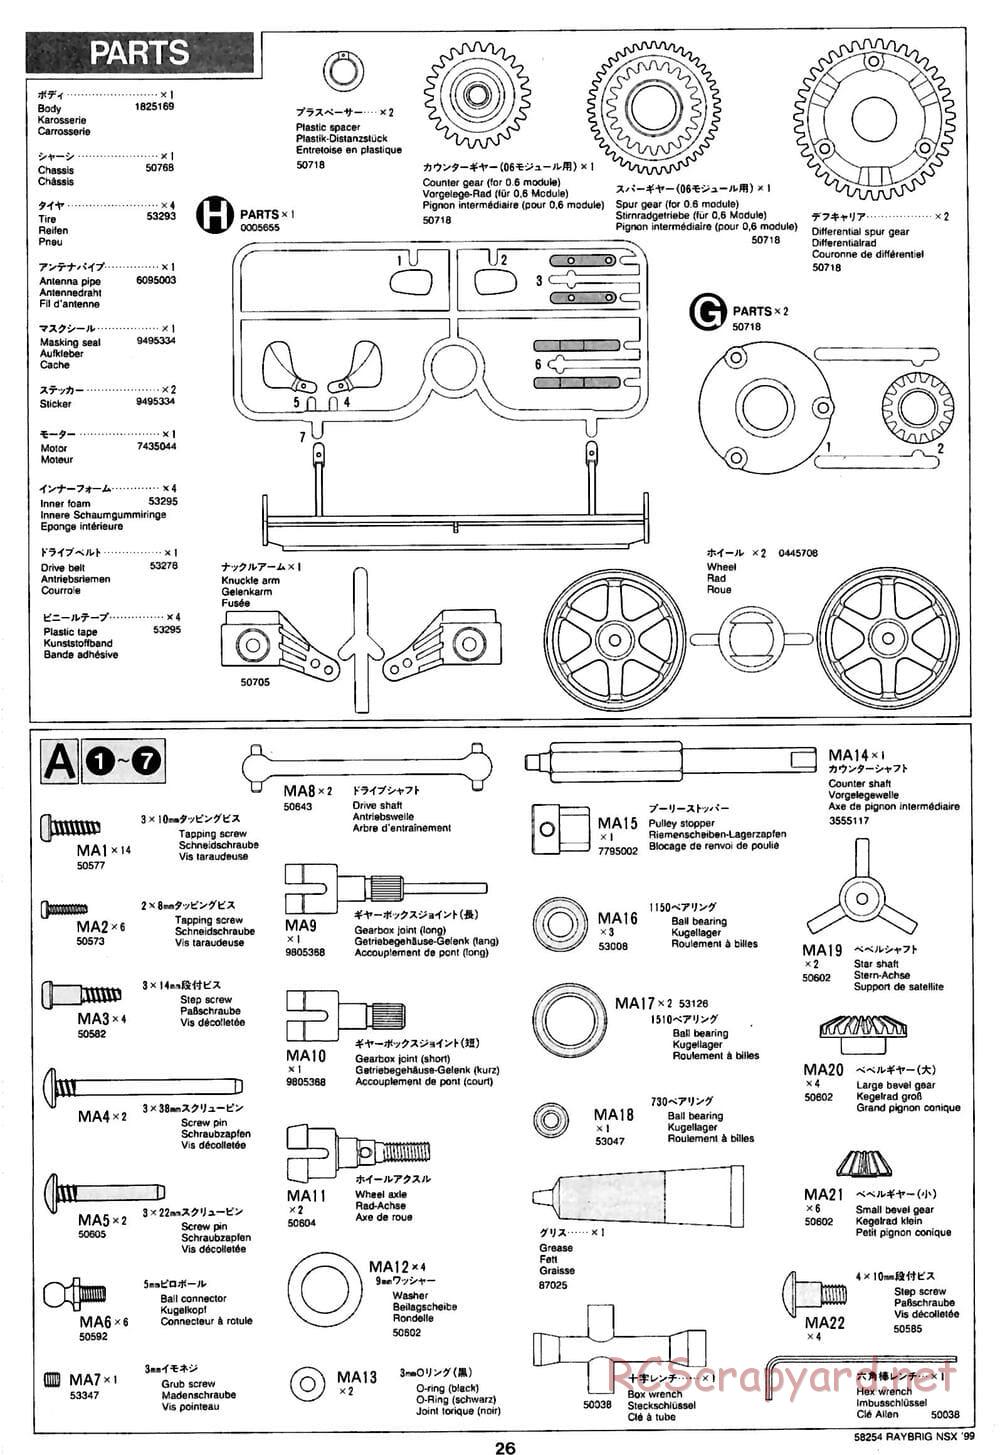 Tamiya - Raybrig NSX 99 - TA-03R Chassis - Manual - Page 26